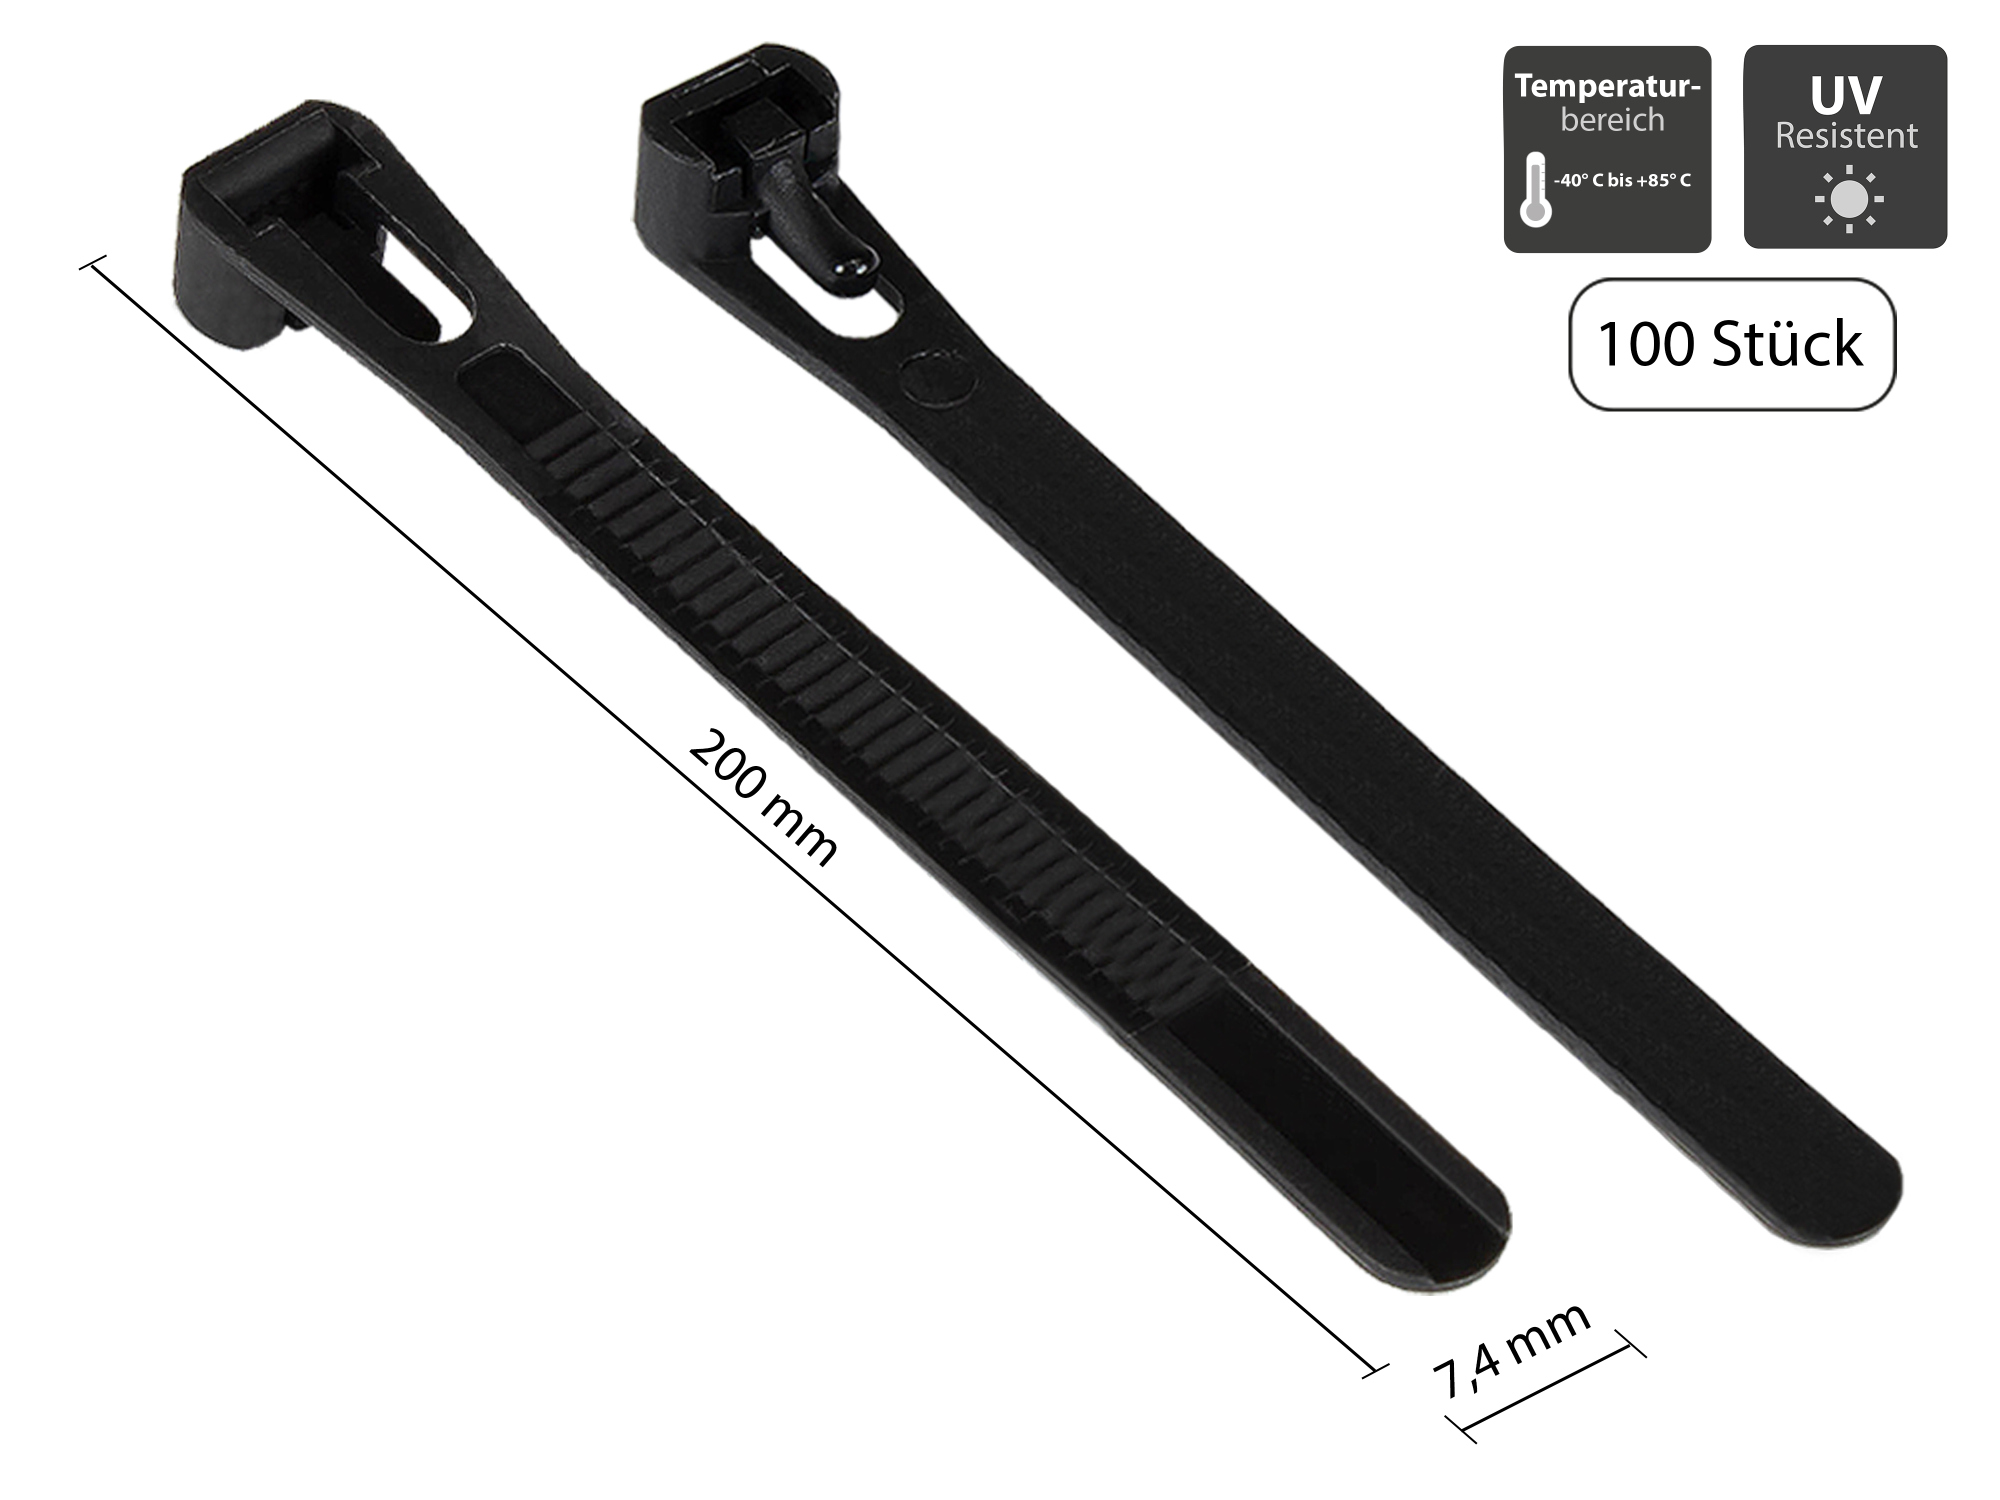 Wiederverwendbarer Kabelbinder 200 mm x 7,4 mm, schwarz, UV-resistent, -40 °C bis +85 °C, 100 Stück